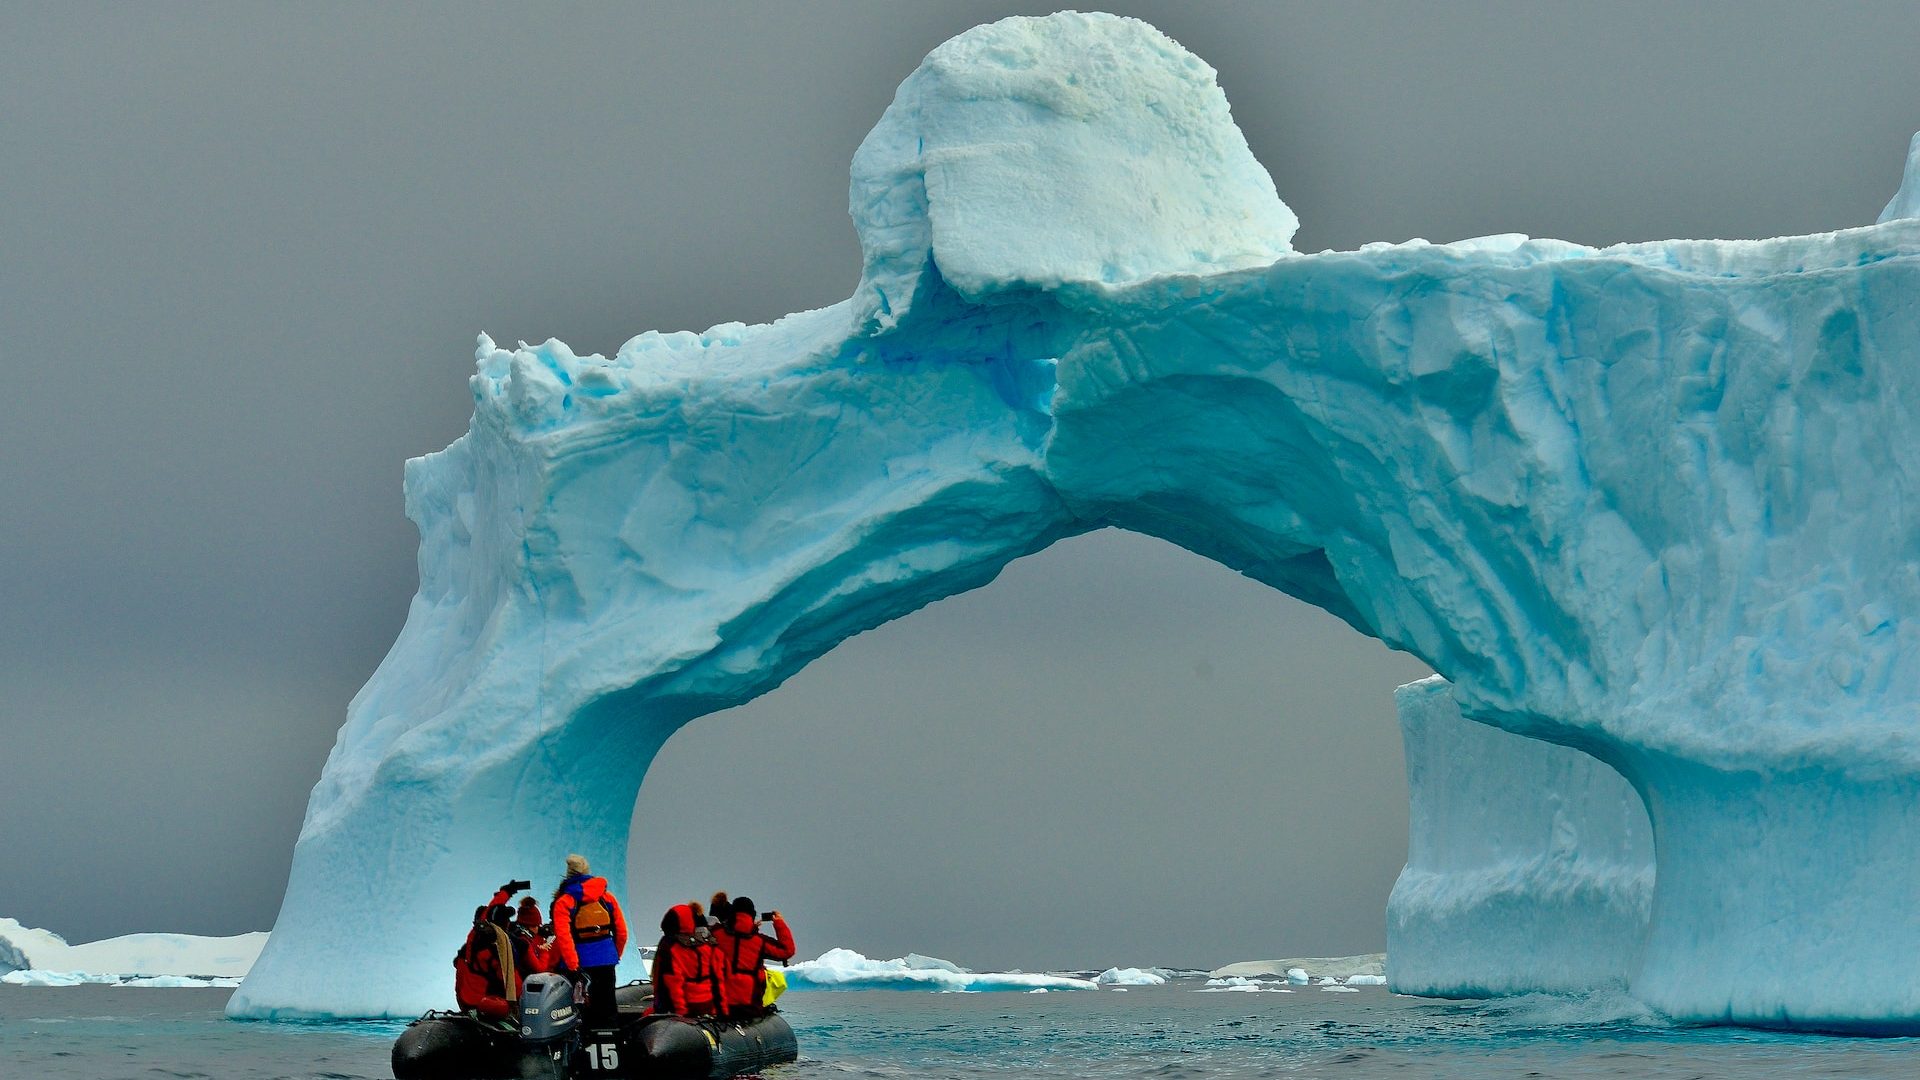 Rinnovabili • Riscaldamento dell’Antartide: è 2 volte più veloce del resto del PianetaRiscaldamento dell’Antartide: è 2 volte più veloce del resto del Pianeta